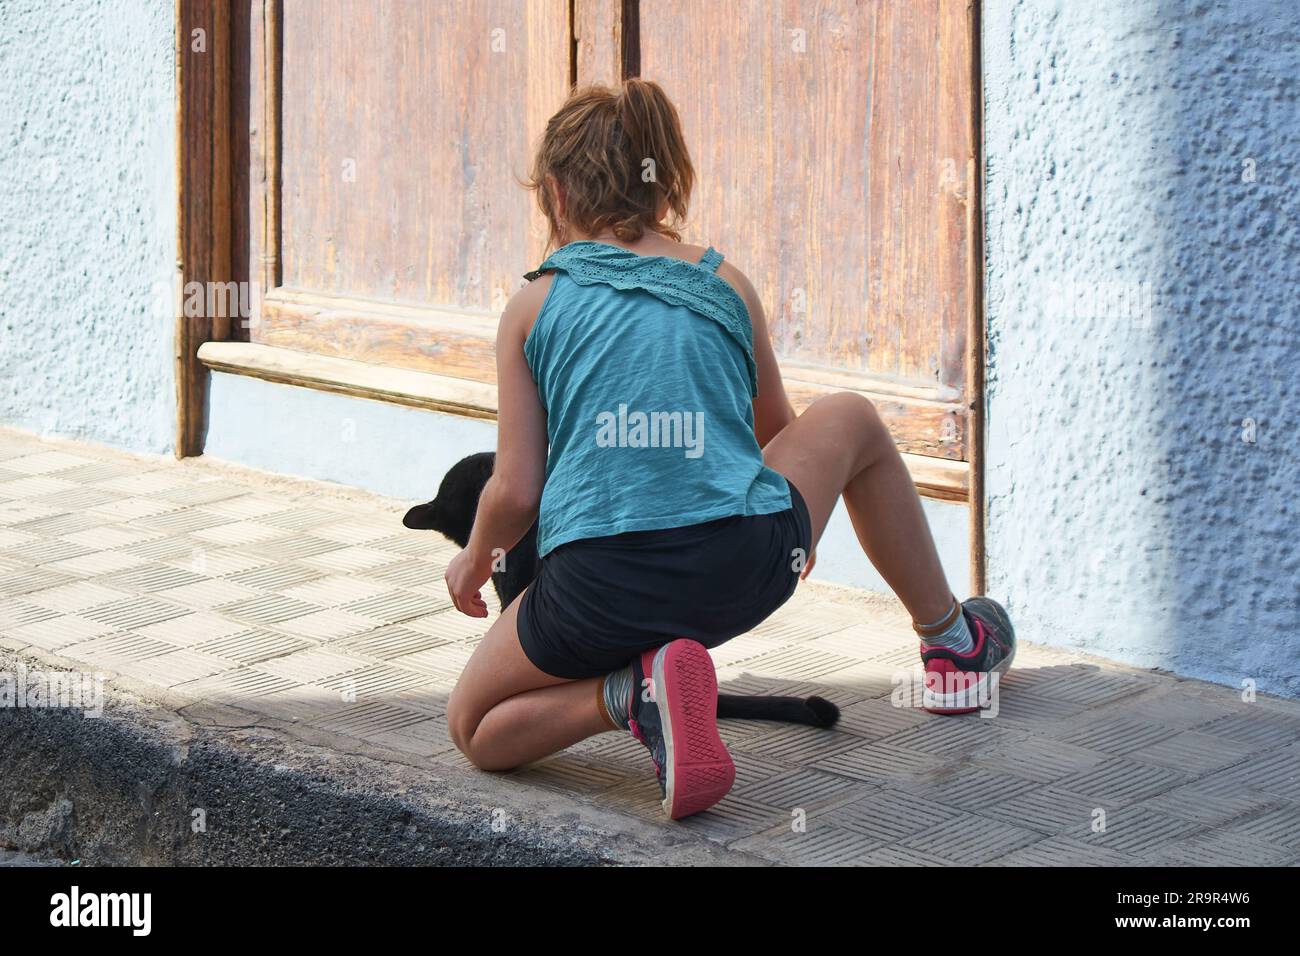 Jeune fille à genoux méconnaissable avec un chat noir devant elle sur une rue ensoleillée. Banque D'Images